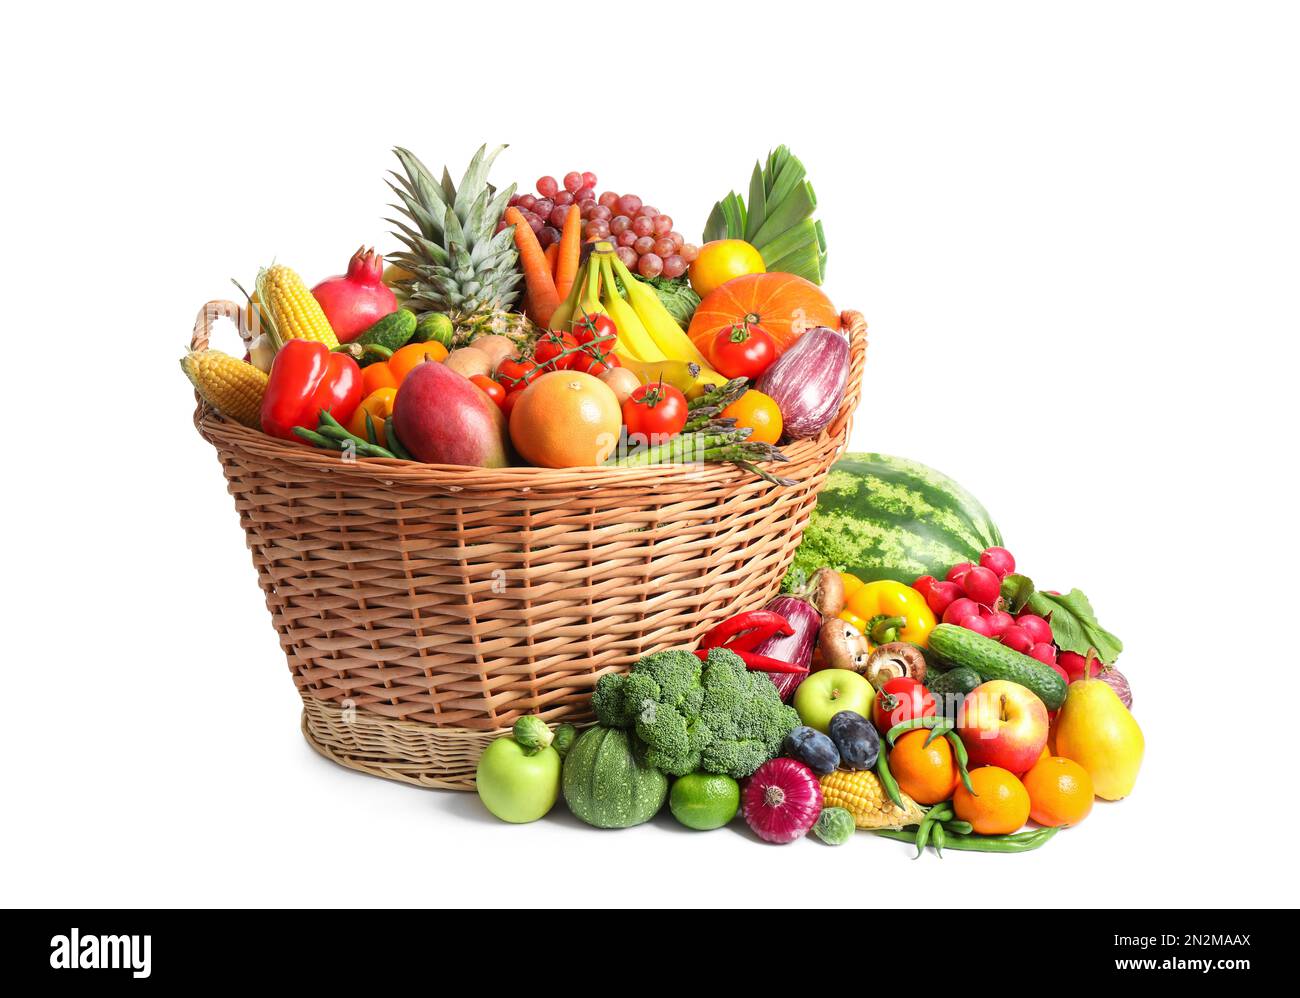 Korb mit einer Auswahl an frischem Bio-Obst und Gemüse auf weißem  Hintergrund Stockfotografie - Alamy